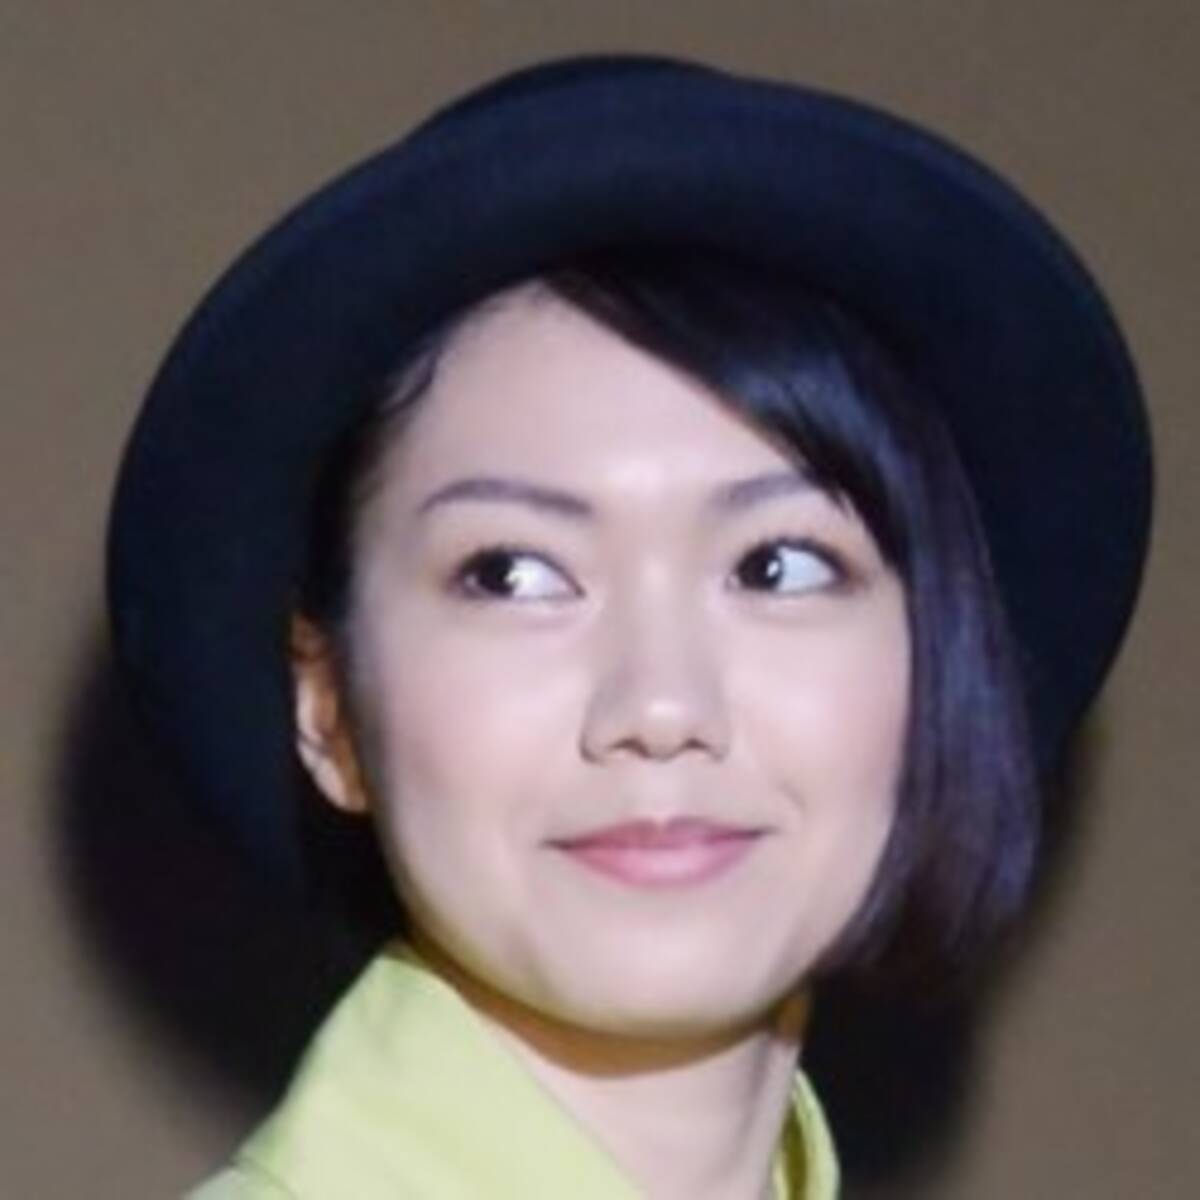 台本に大量のルビ 慶應ガール女優 二階堂ふみは漢字が読めない 16年9月10日 エキサイトニュース